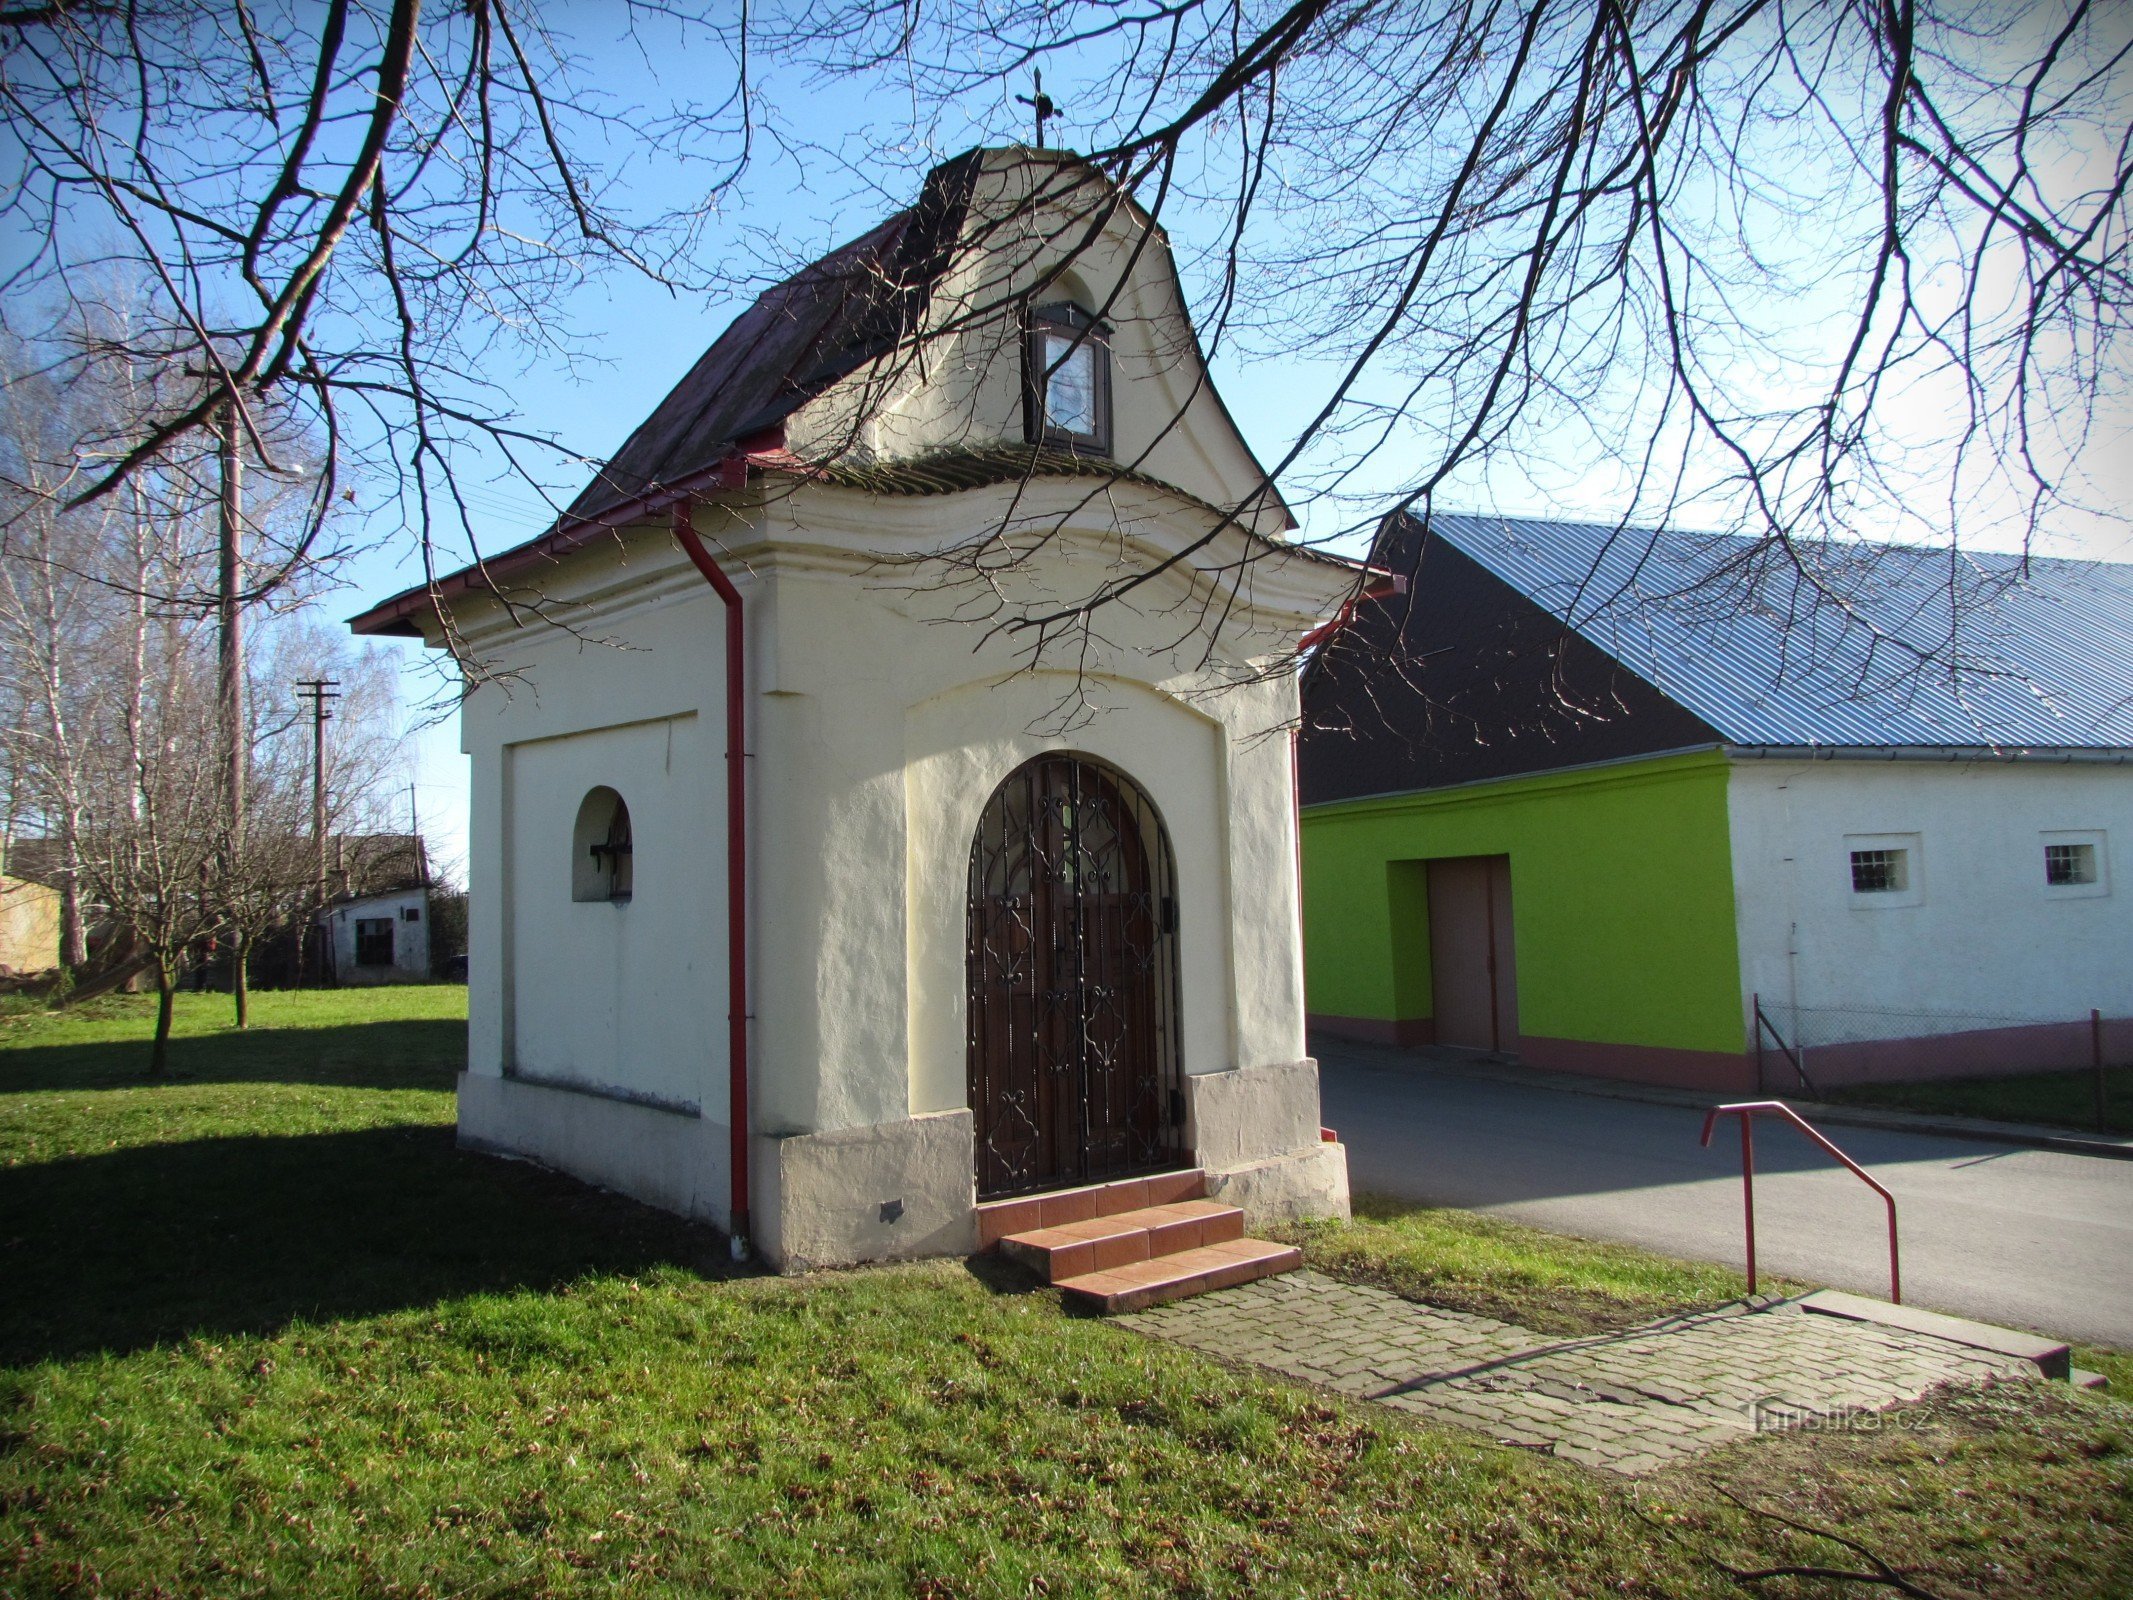 Žeranovice - Nepomuck 的圣约翰教堂